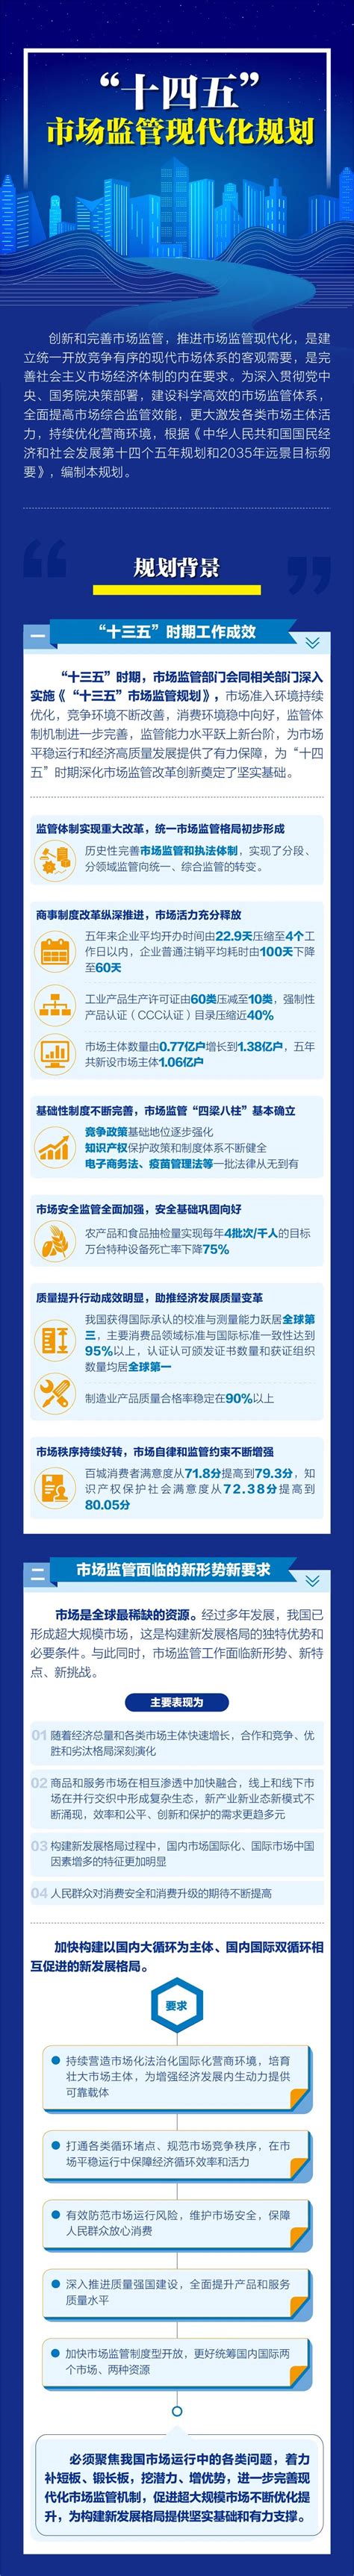 《浙江省公共数据条例》正式施行，促进数据依法开放共享-浙江工人日报网